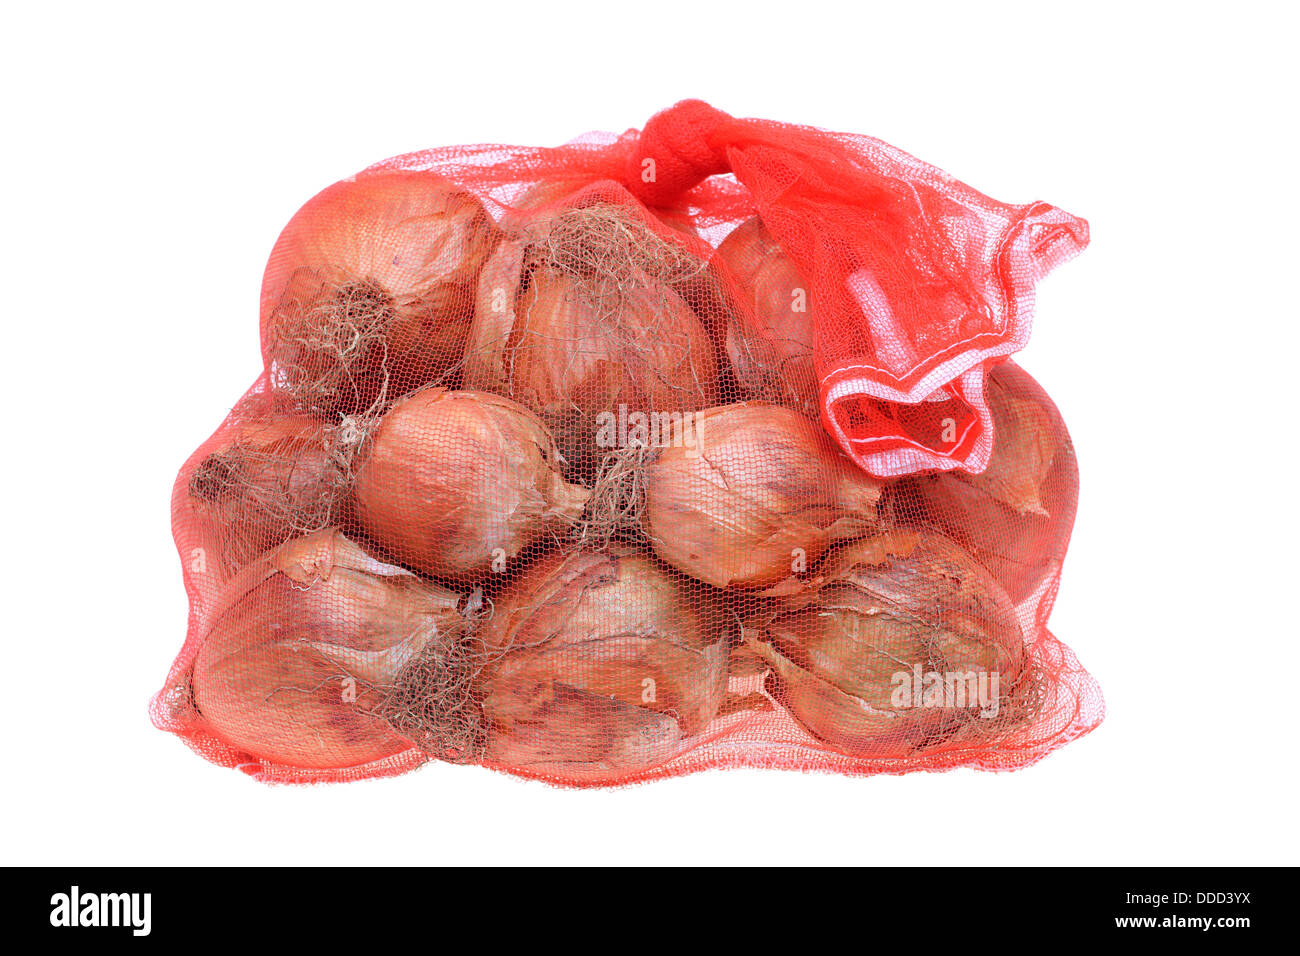 https://c8.alamy.com/comp/DDD3YX/fresh-onions-in-a-red-plastic-net-on-a-white-background-DDD3YX.jpg